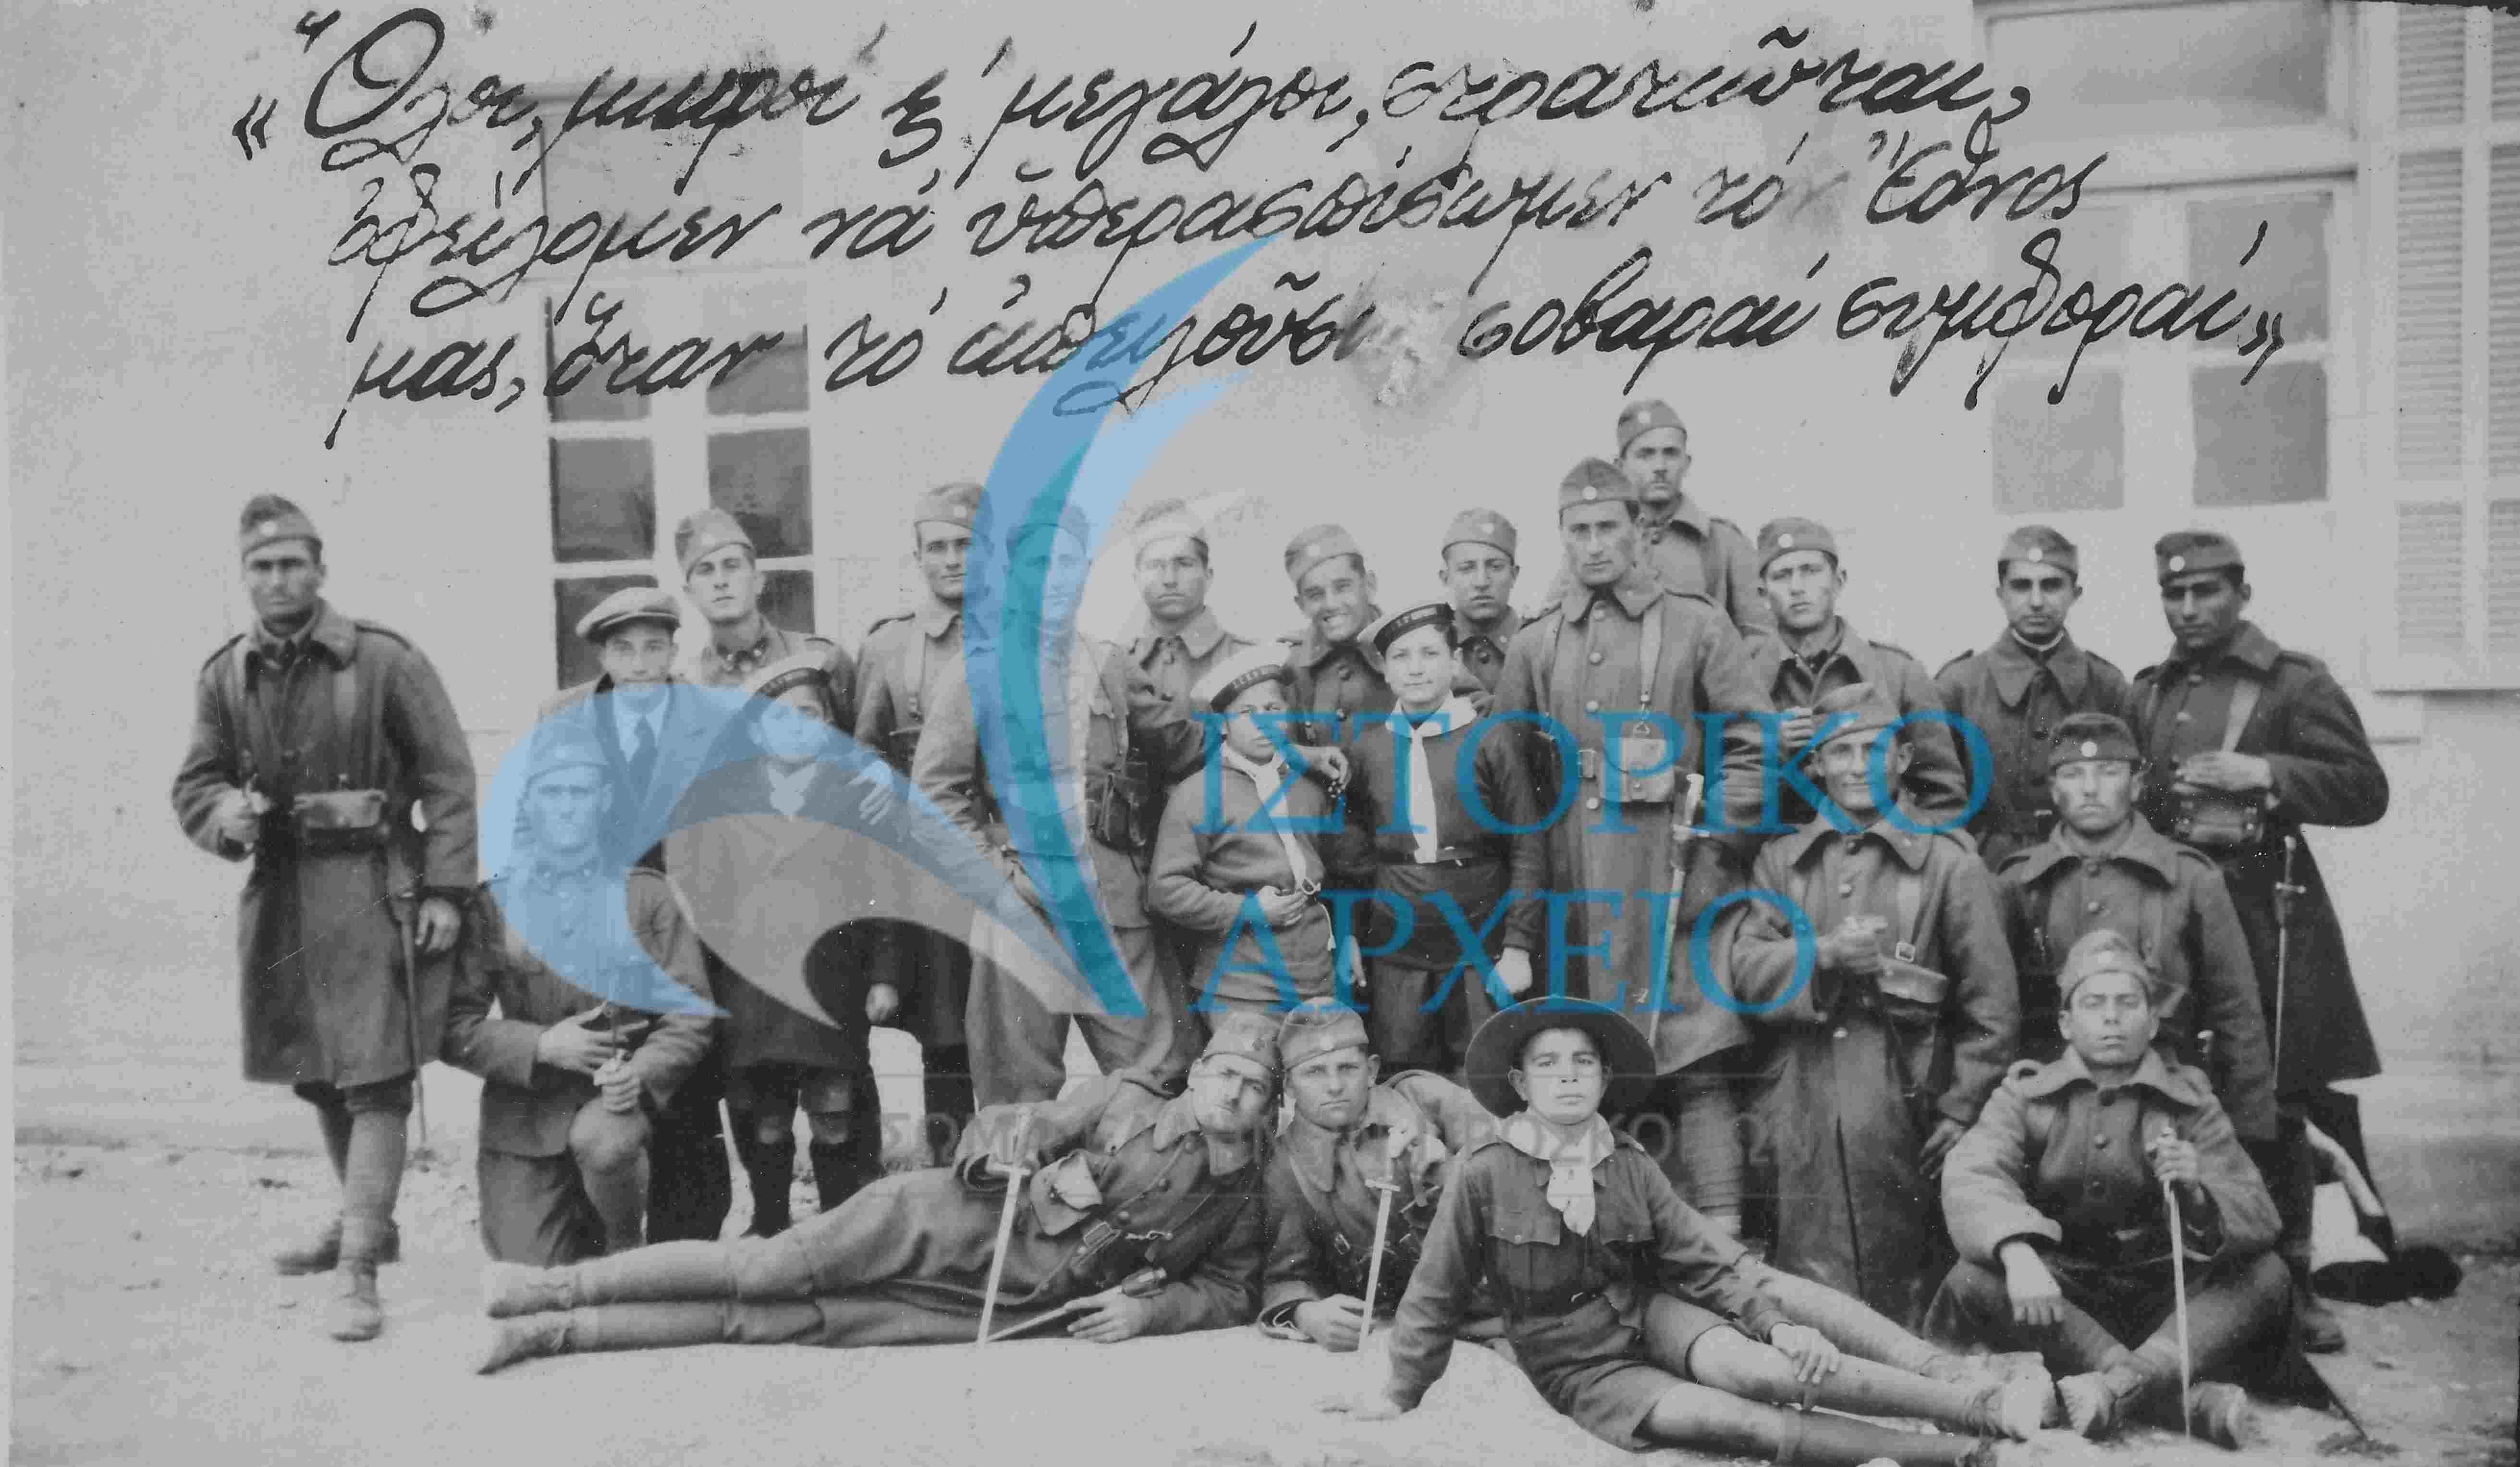 Πρόσκοποι της Κορίνθου προσφέρουν βοηθητικές υπηρεσίες στην 4η Μεραρχία Πεζικού κατά το Κίνημα Πλαστήρα - Βενιζέλου το 1935.